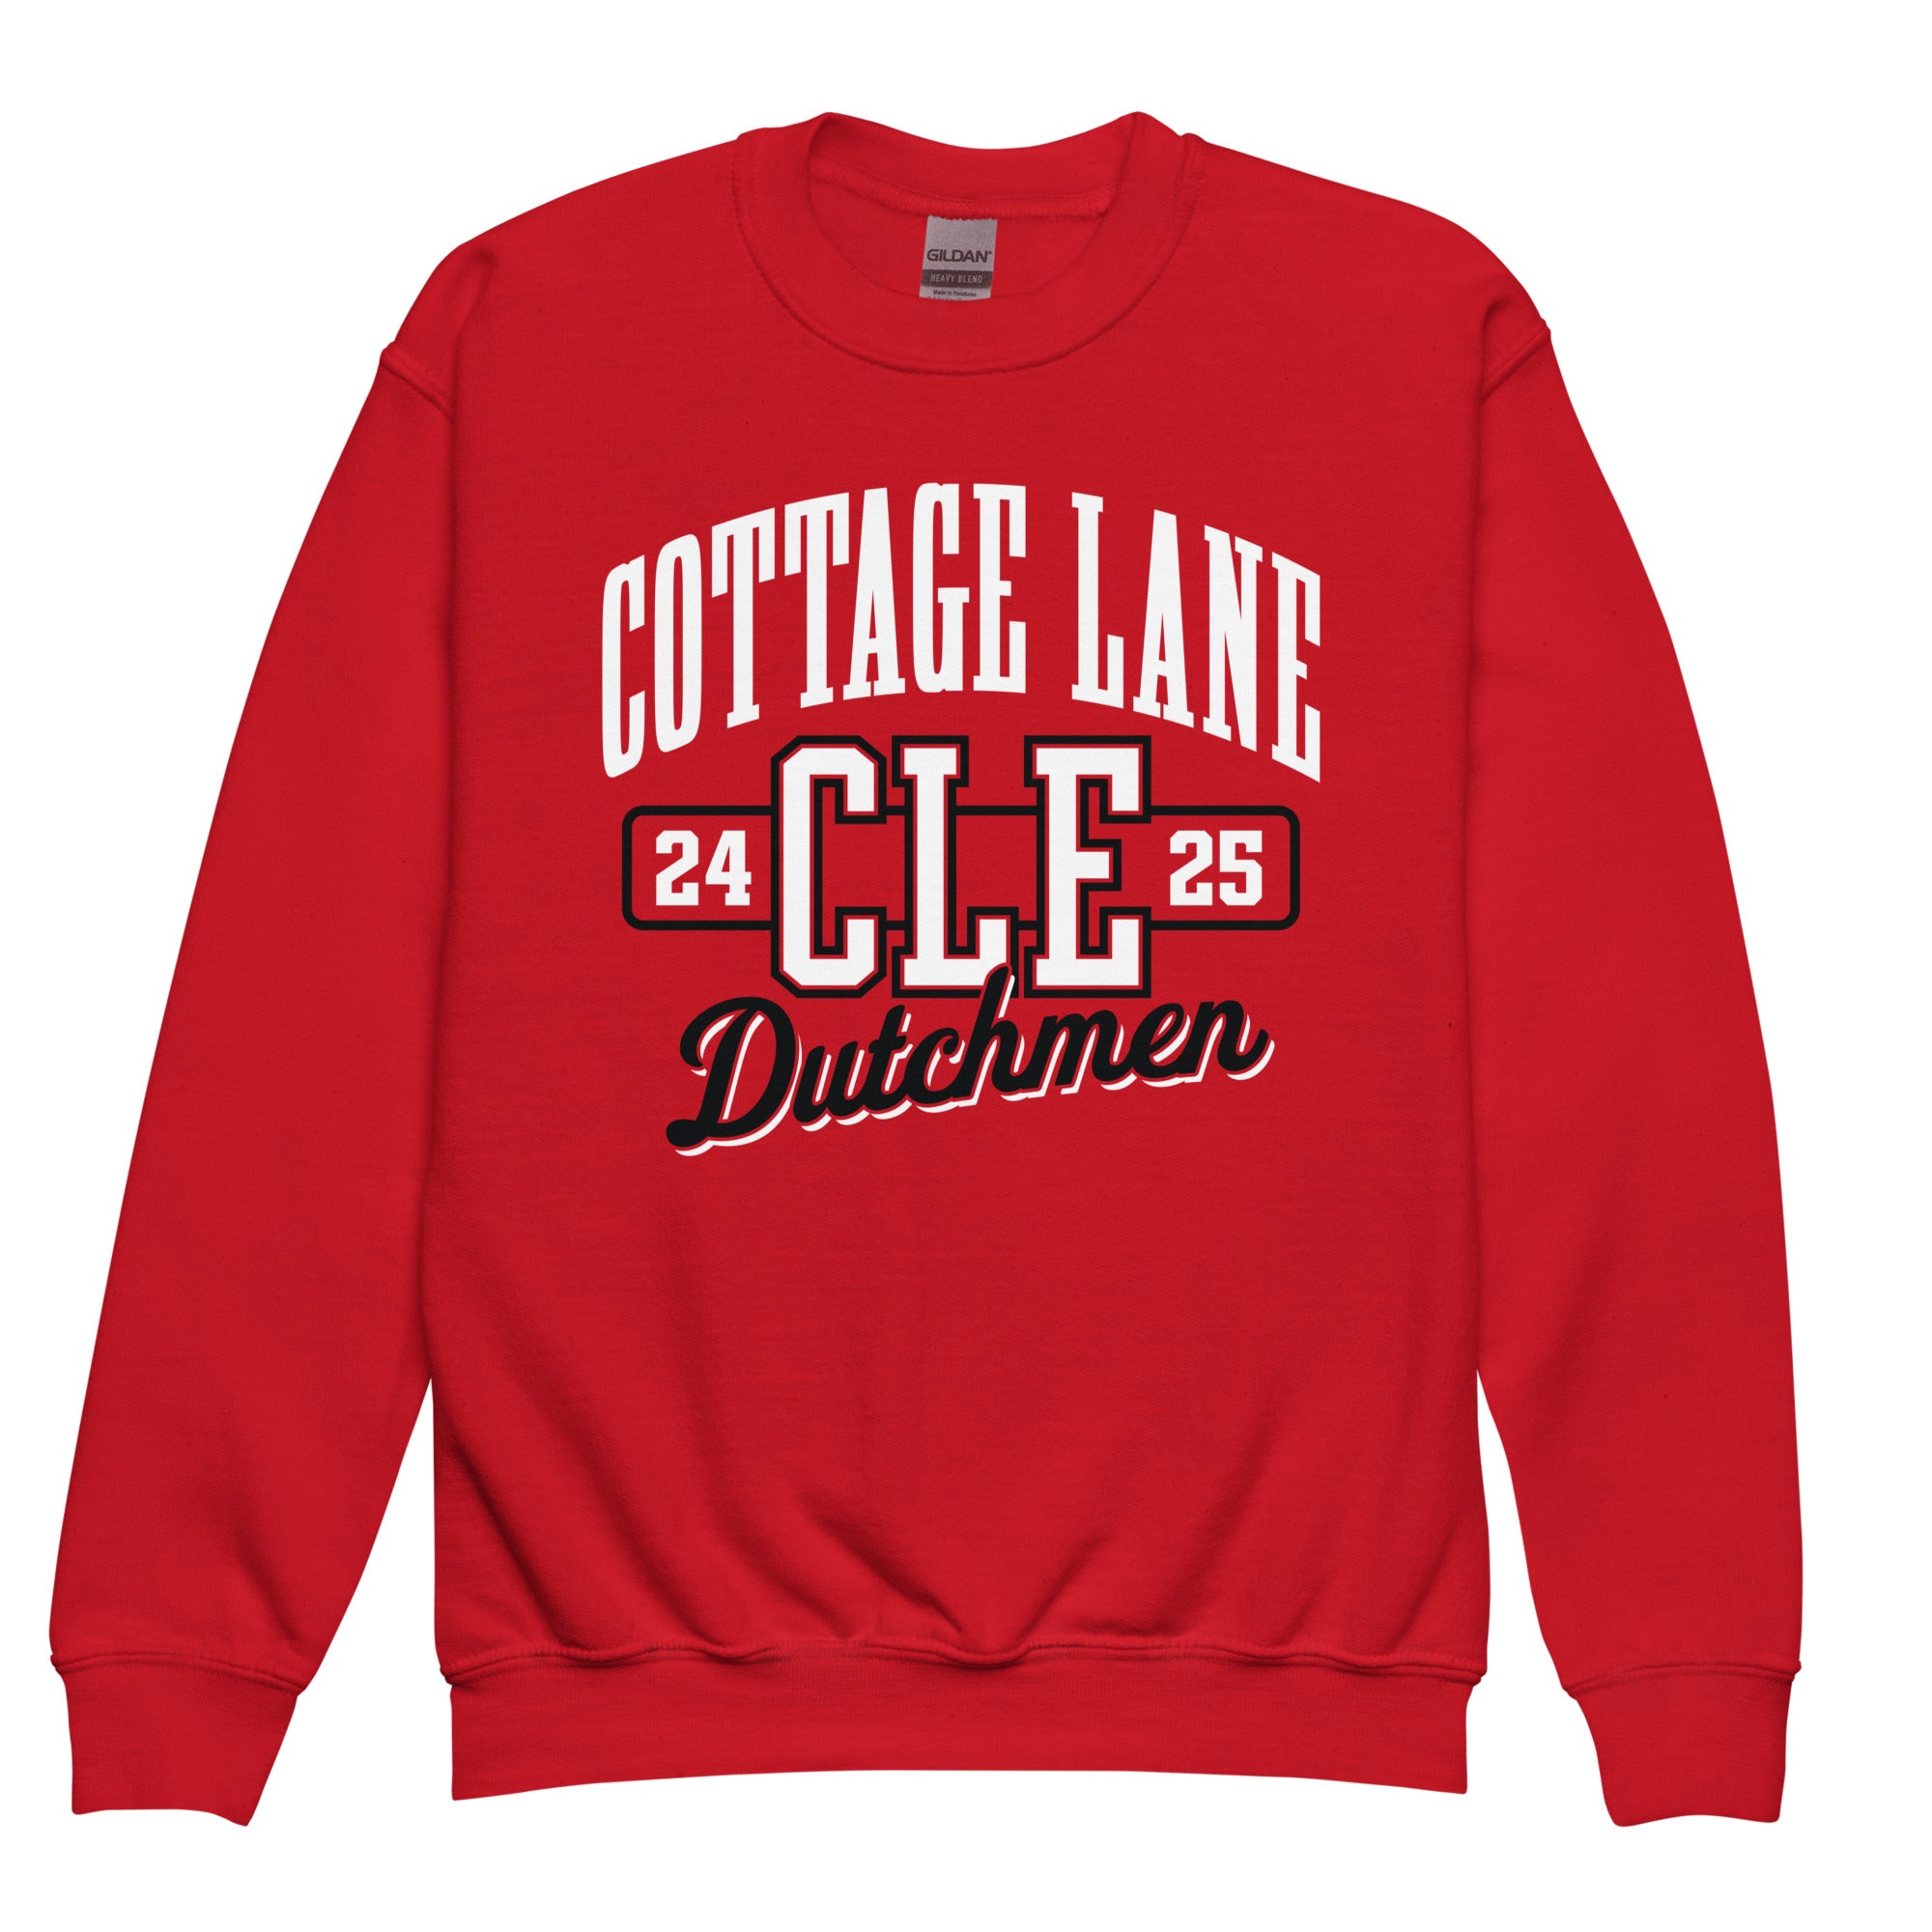 Cottage Lane Elementary Youth crewneck sweatshirt